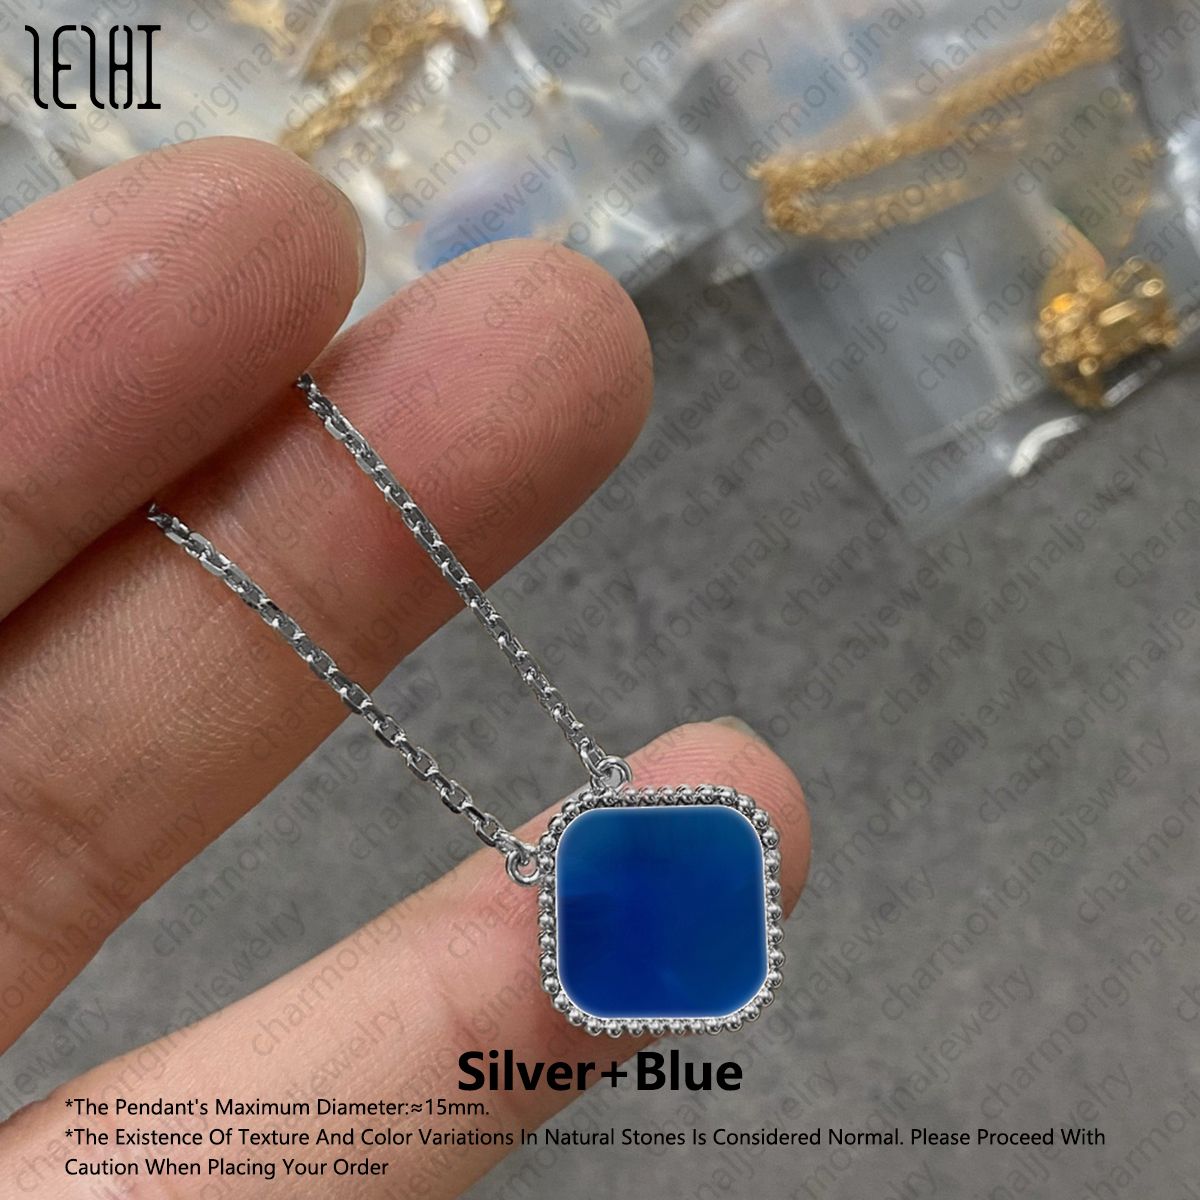 الفضة+الأزرق